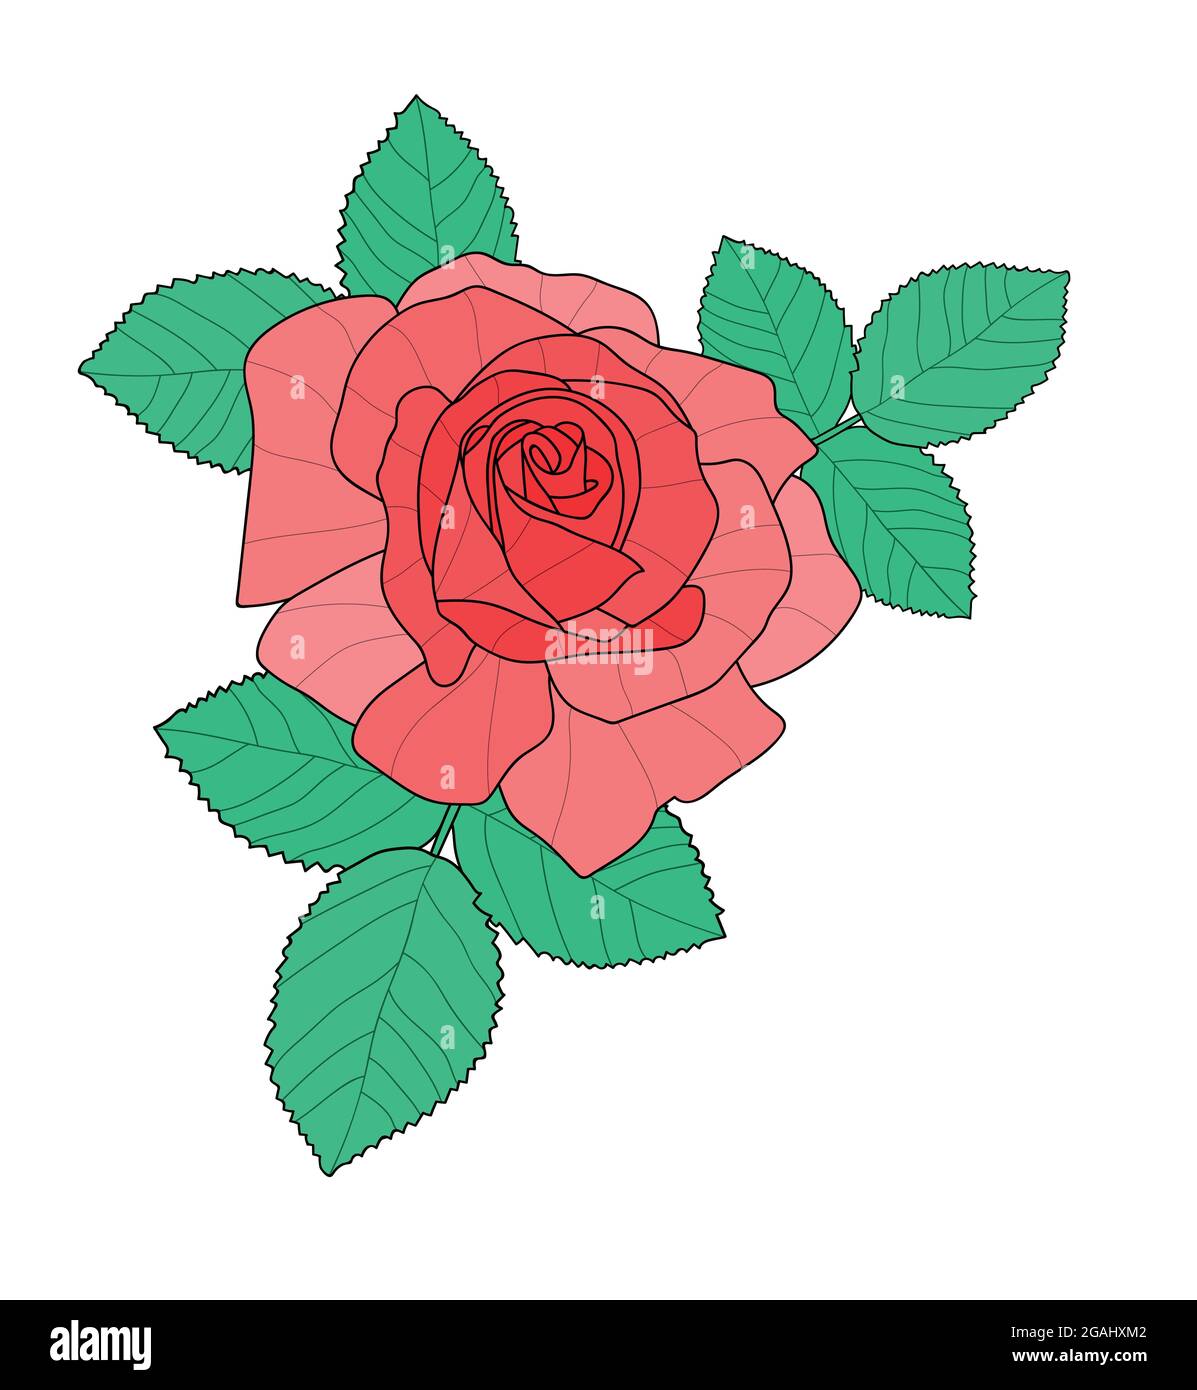 Rosa rossa con foglie. Illustrazione disegnata a mano isolata su bianco Illustrazione Vettoriale